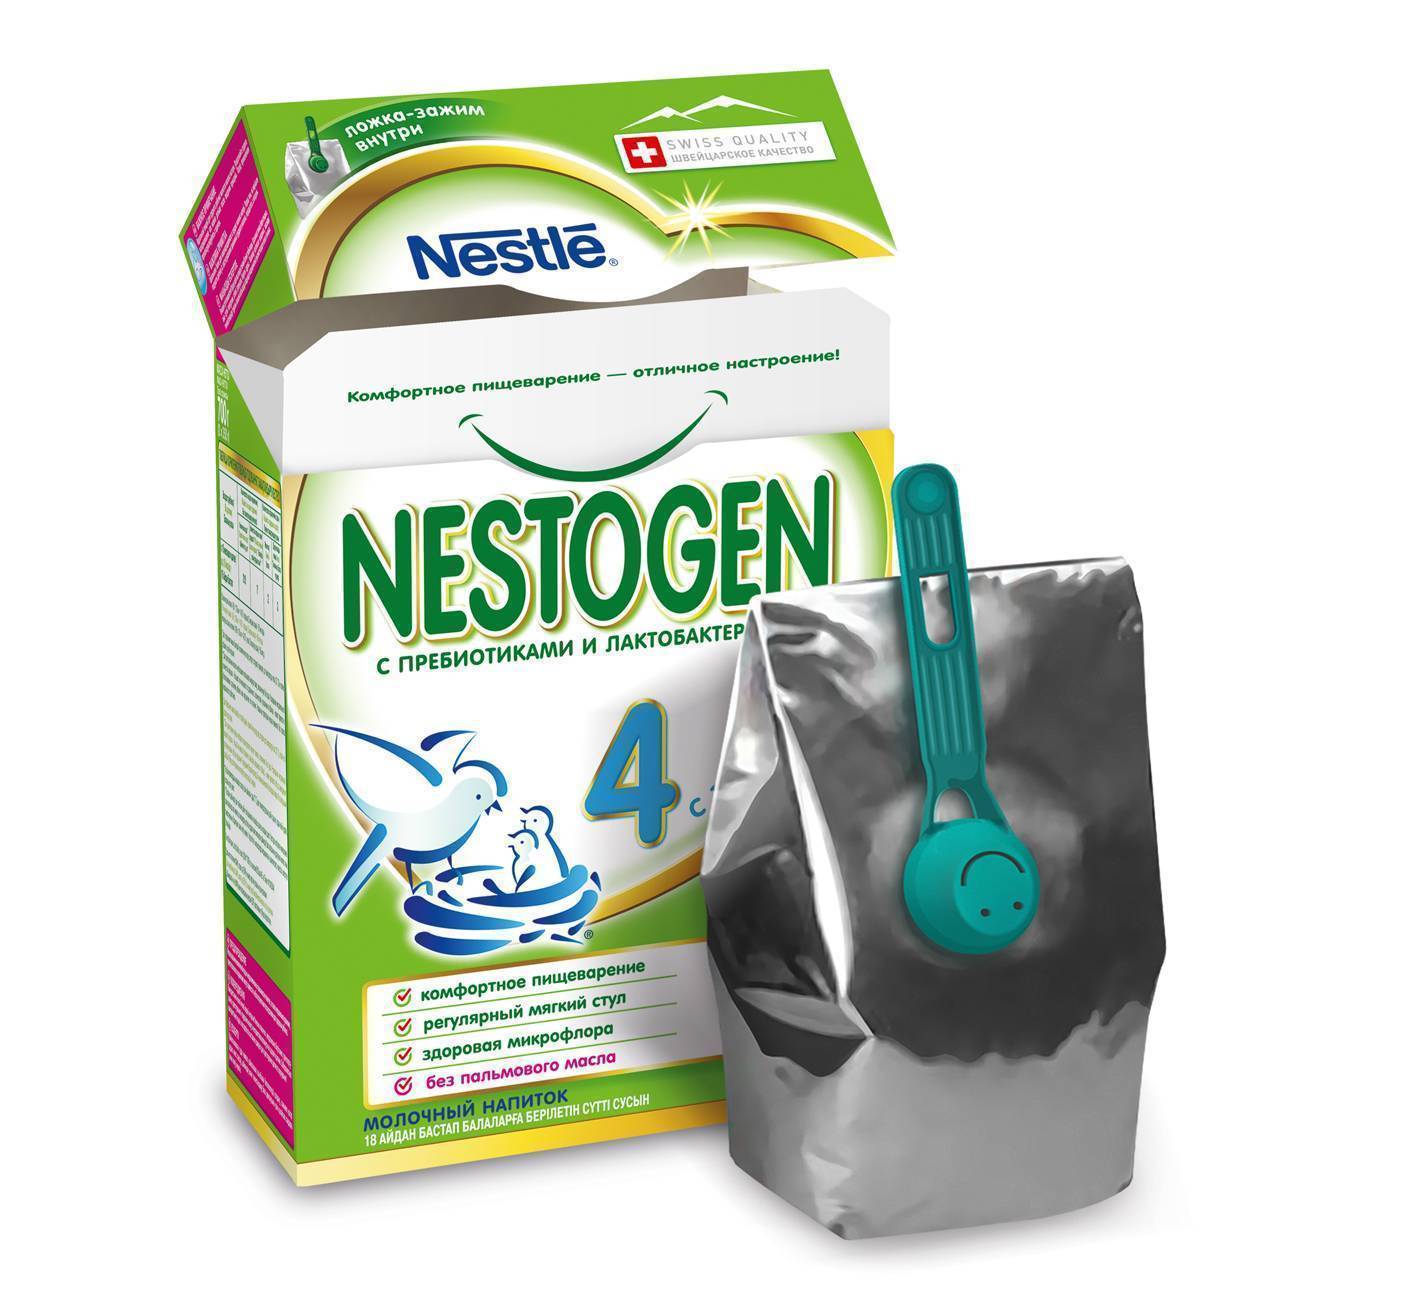 Nestogen (Nestle) 1, с рождения, 700 г